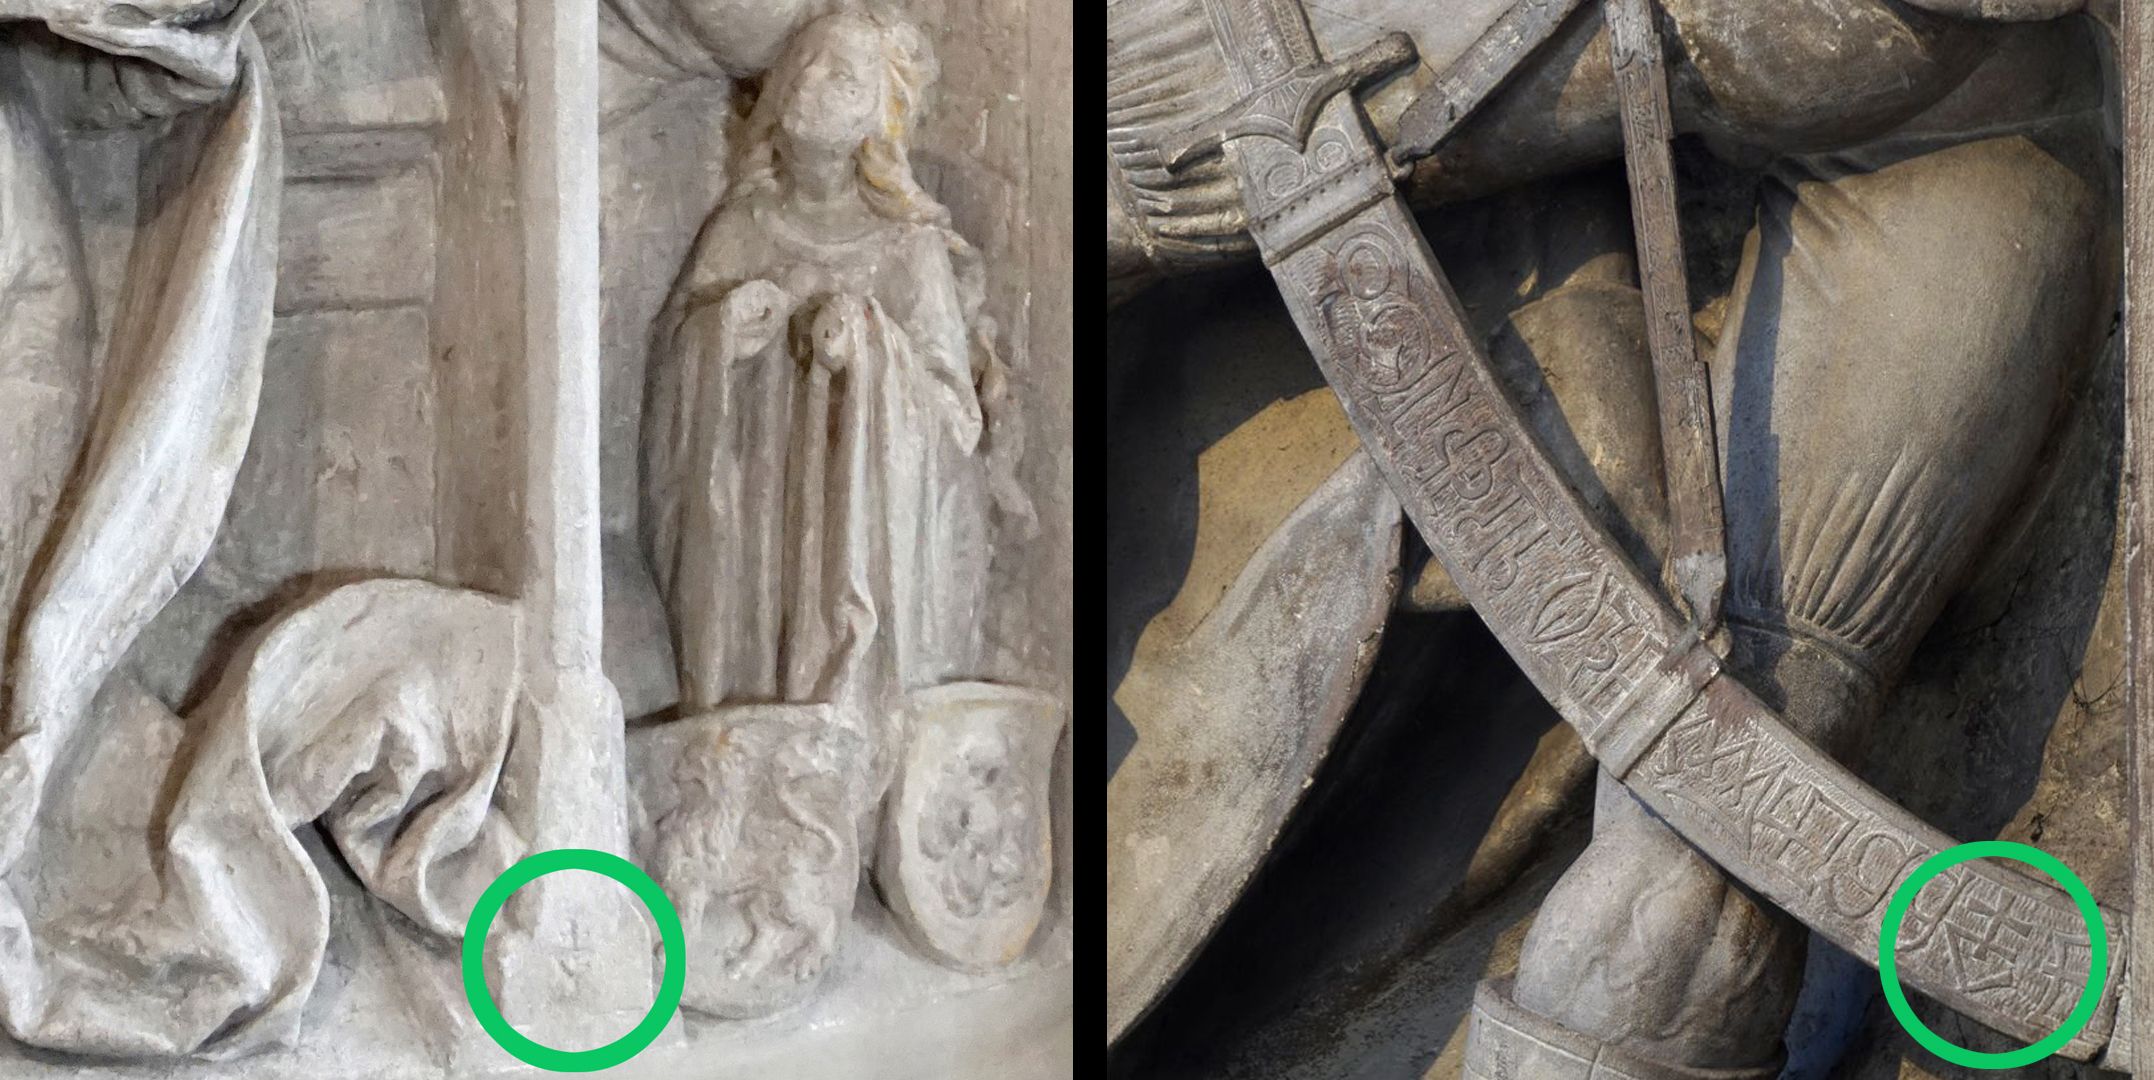 Verkündigungsrelief vom Epitaph der Margaretha von Wildenfels Meisterzeichen von Veit Stoss: links in Langenzenn, rechts an Volckamerschen Gedächtnisstiftung von 1499 im Hallenchor der Sebalduskirche in Nürnberg